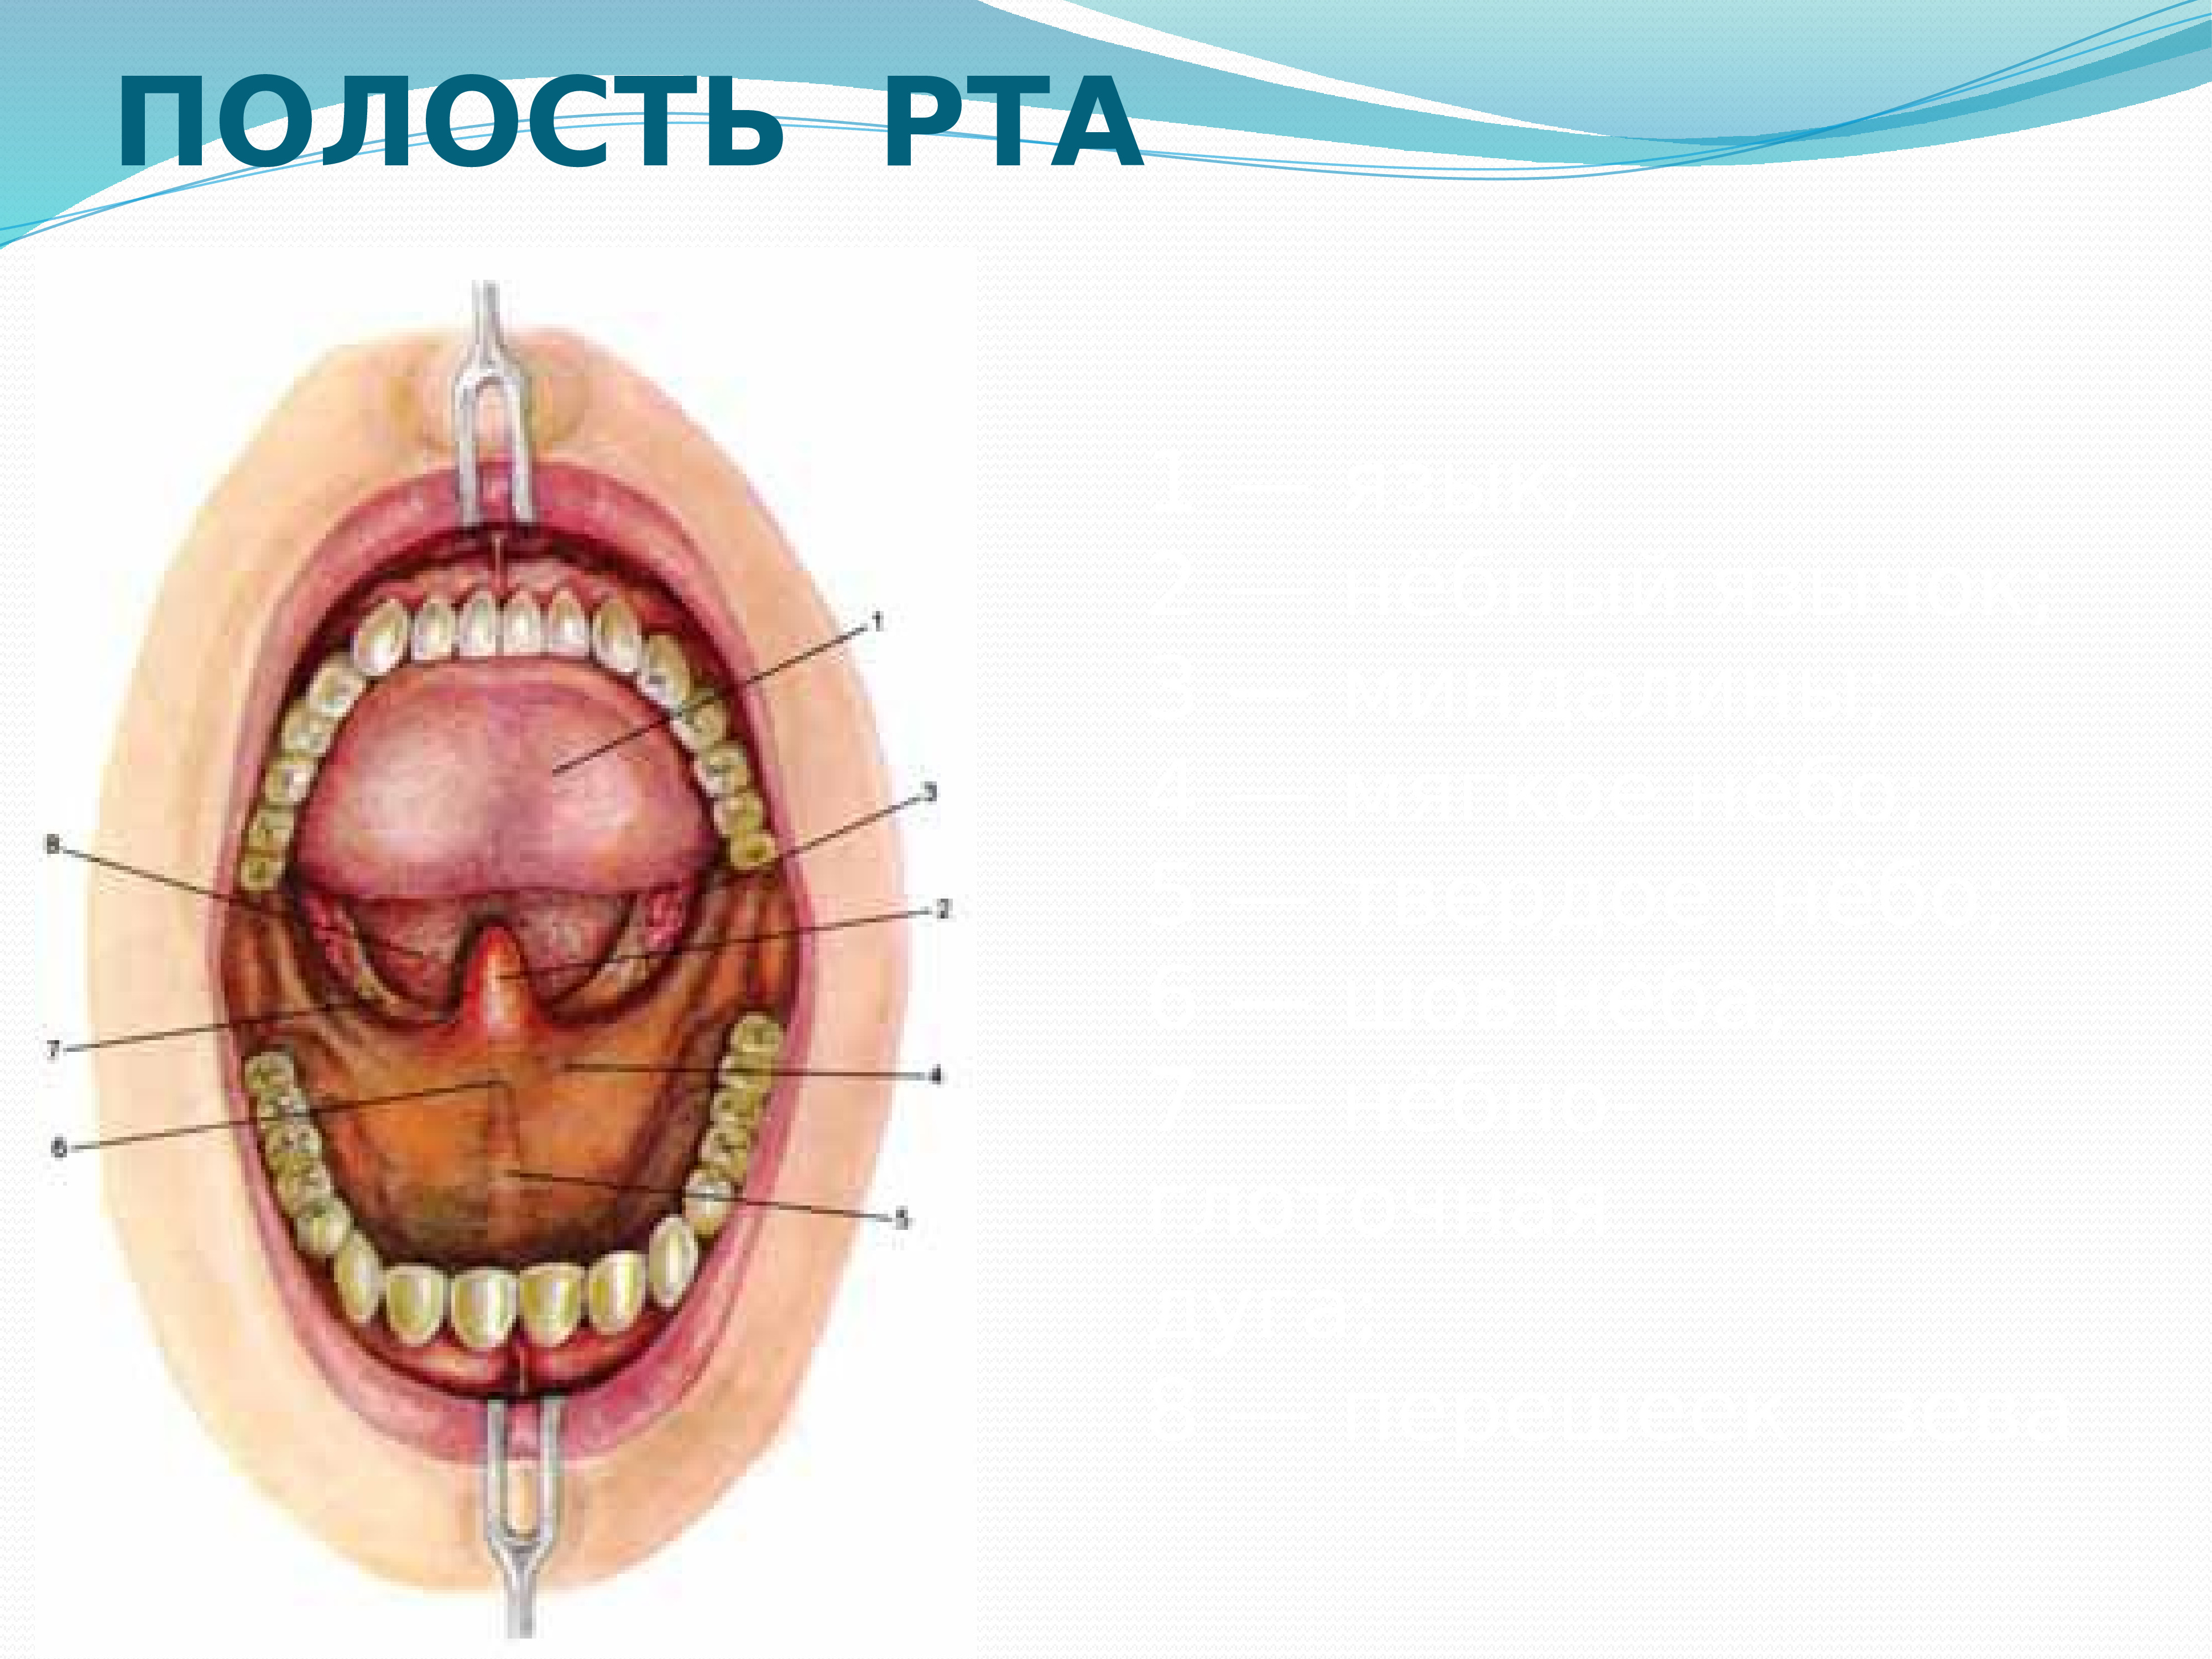 Полость рта схема. Анатомическое строение ротовой полости. Полость рта вид спереди. Строение внутри полости рта.